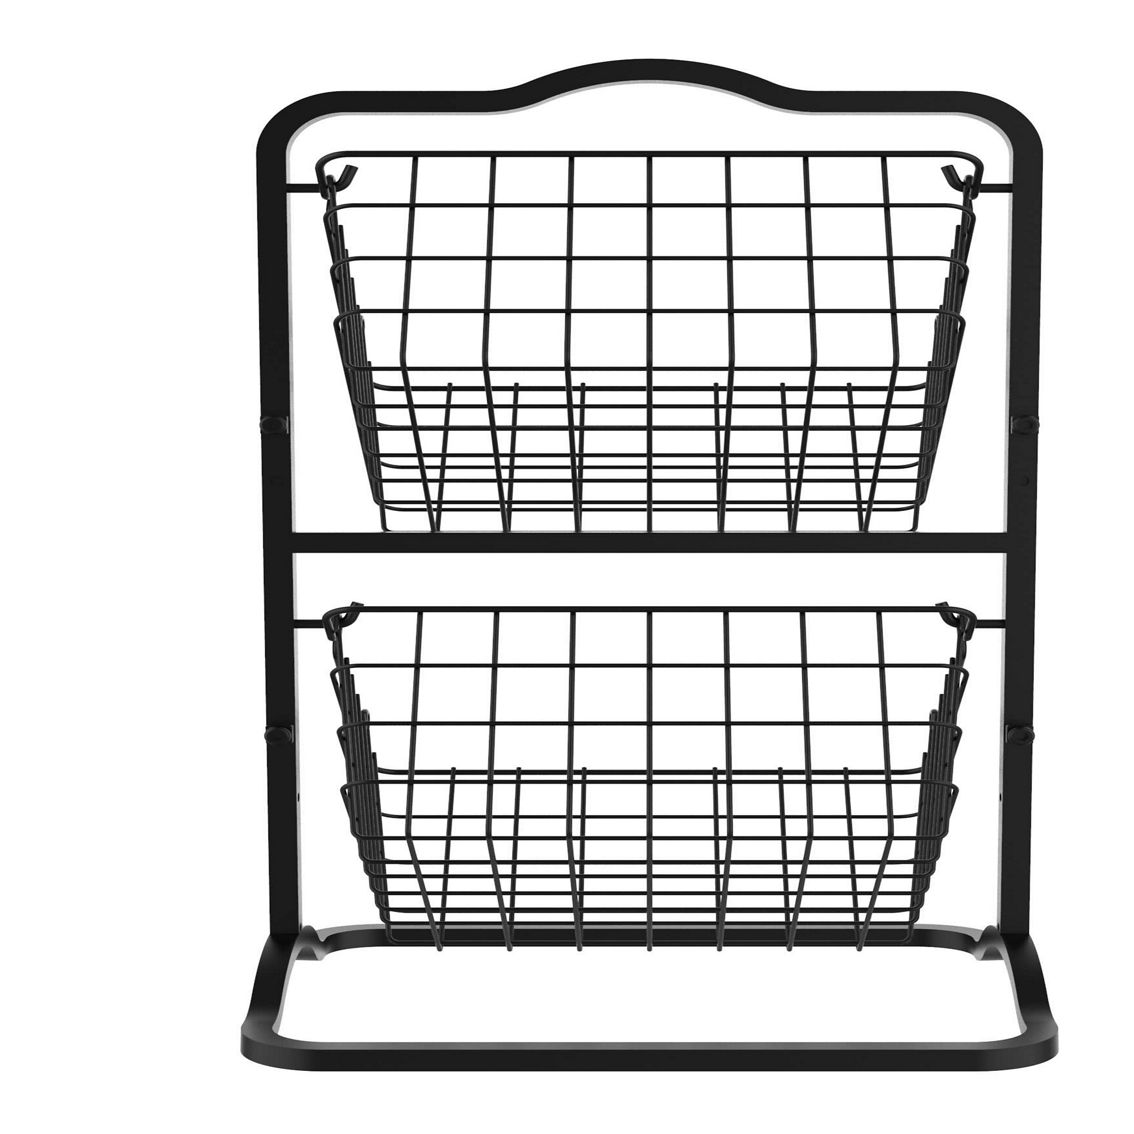 Oceanstar 2-Tier Storage Kitchen Wire Basket Stand, Black - Image 2 of 5